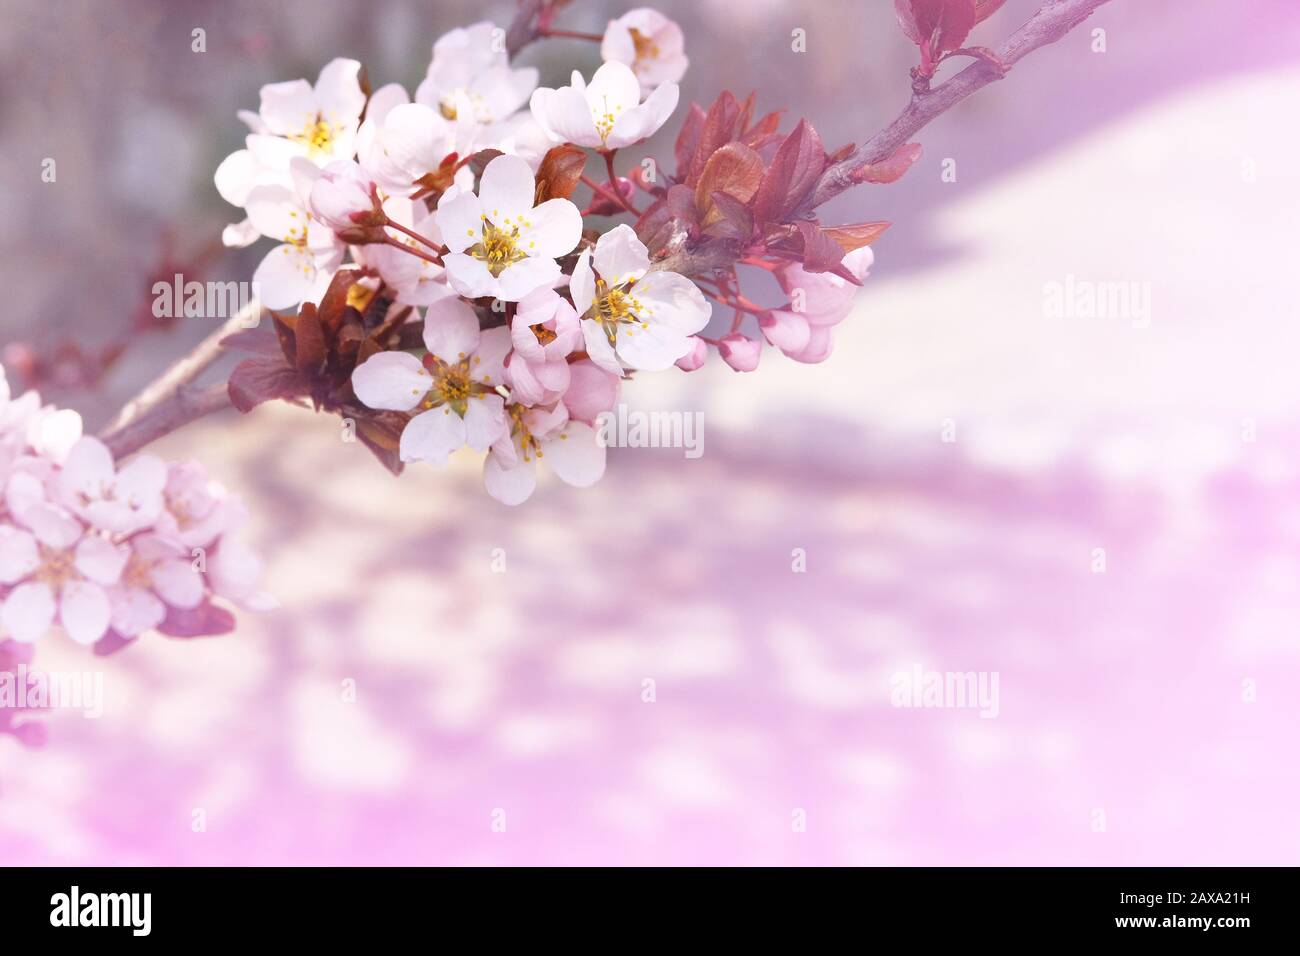 Aprikosenblüten mit hellen Kronblättern. Grußkarte für den Tag der Frauen. Verwischter Naturhintergrund im Frühling, violette Farbe. Stockfoto